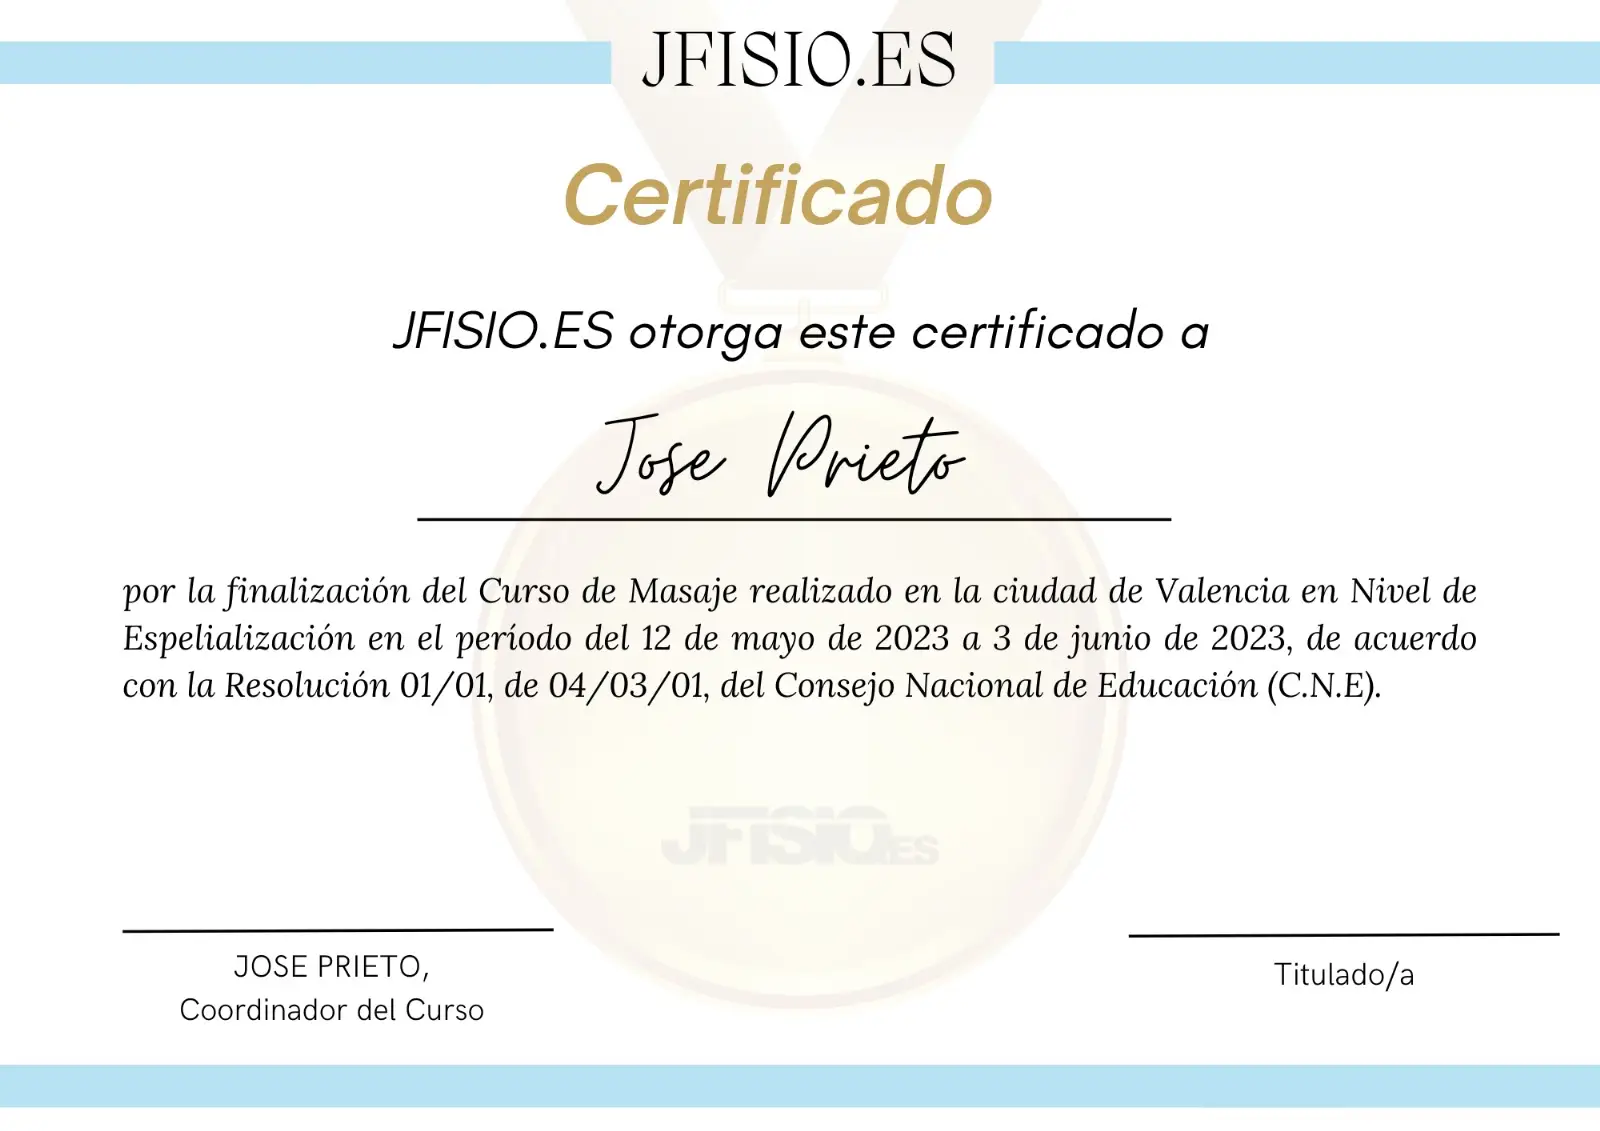 Diploma de masaje. Titulo de quiromasaje jfisio.es